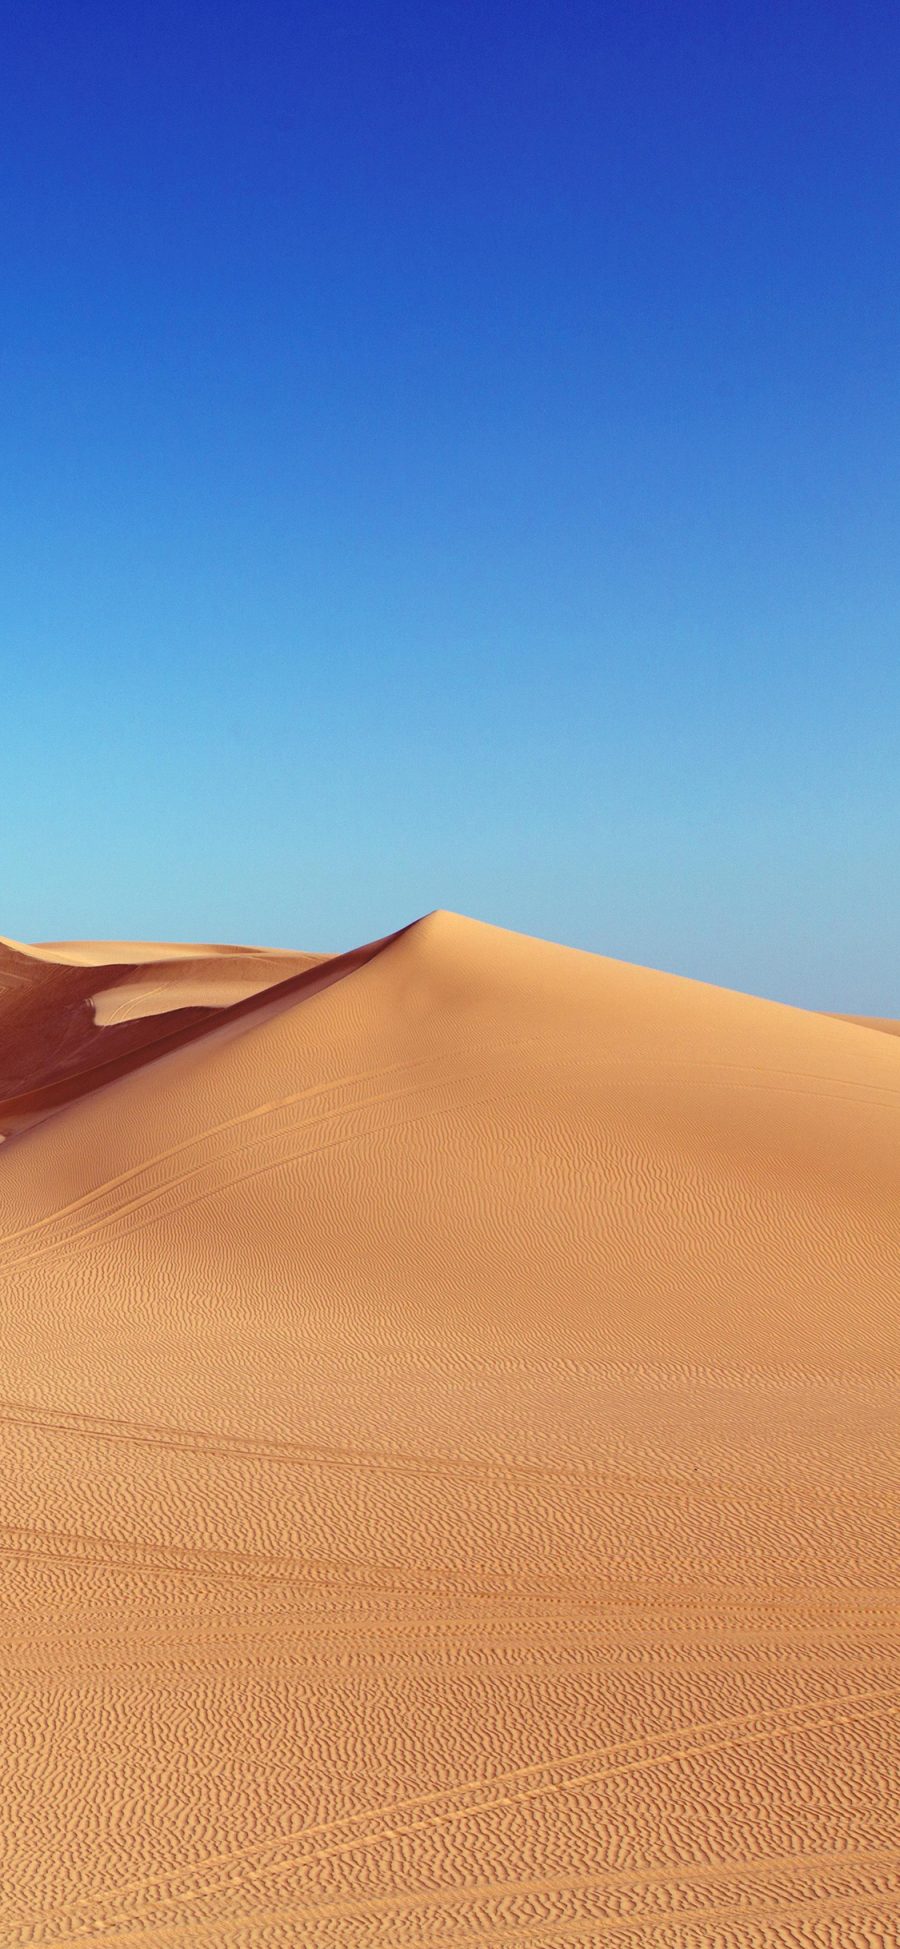 [2436×1125]沙漠 荒漠 大自然 曲线 苹果手机壁纸图片